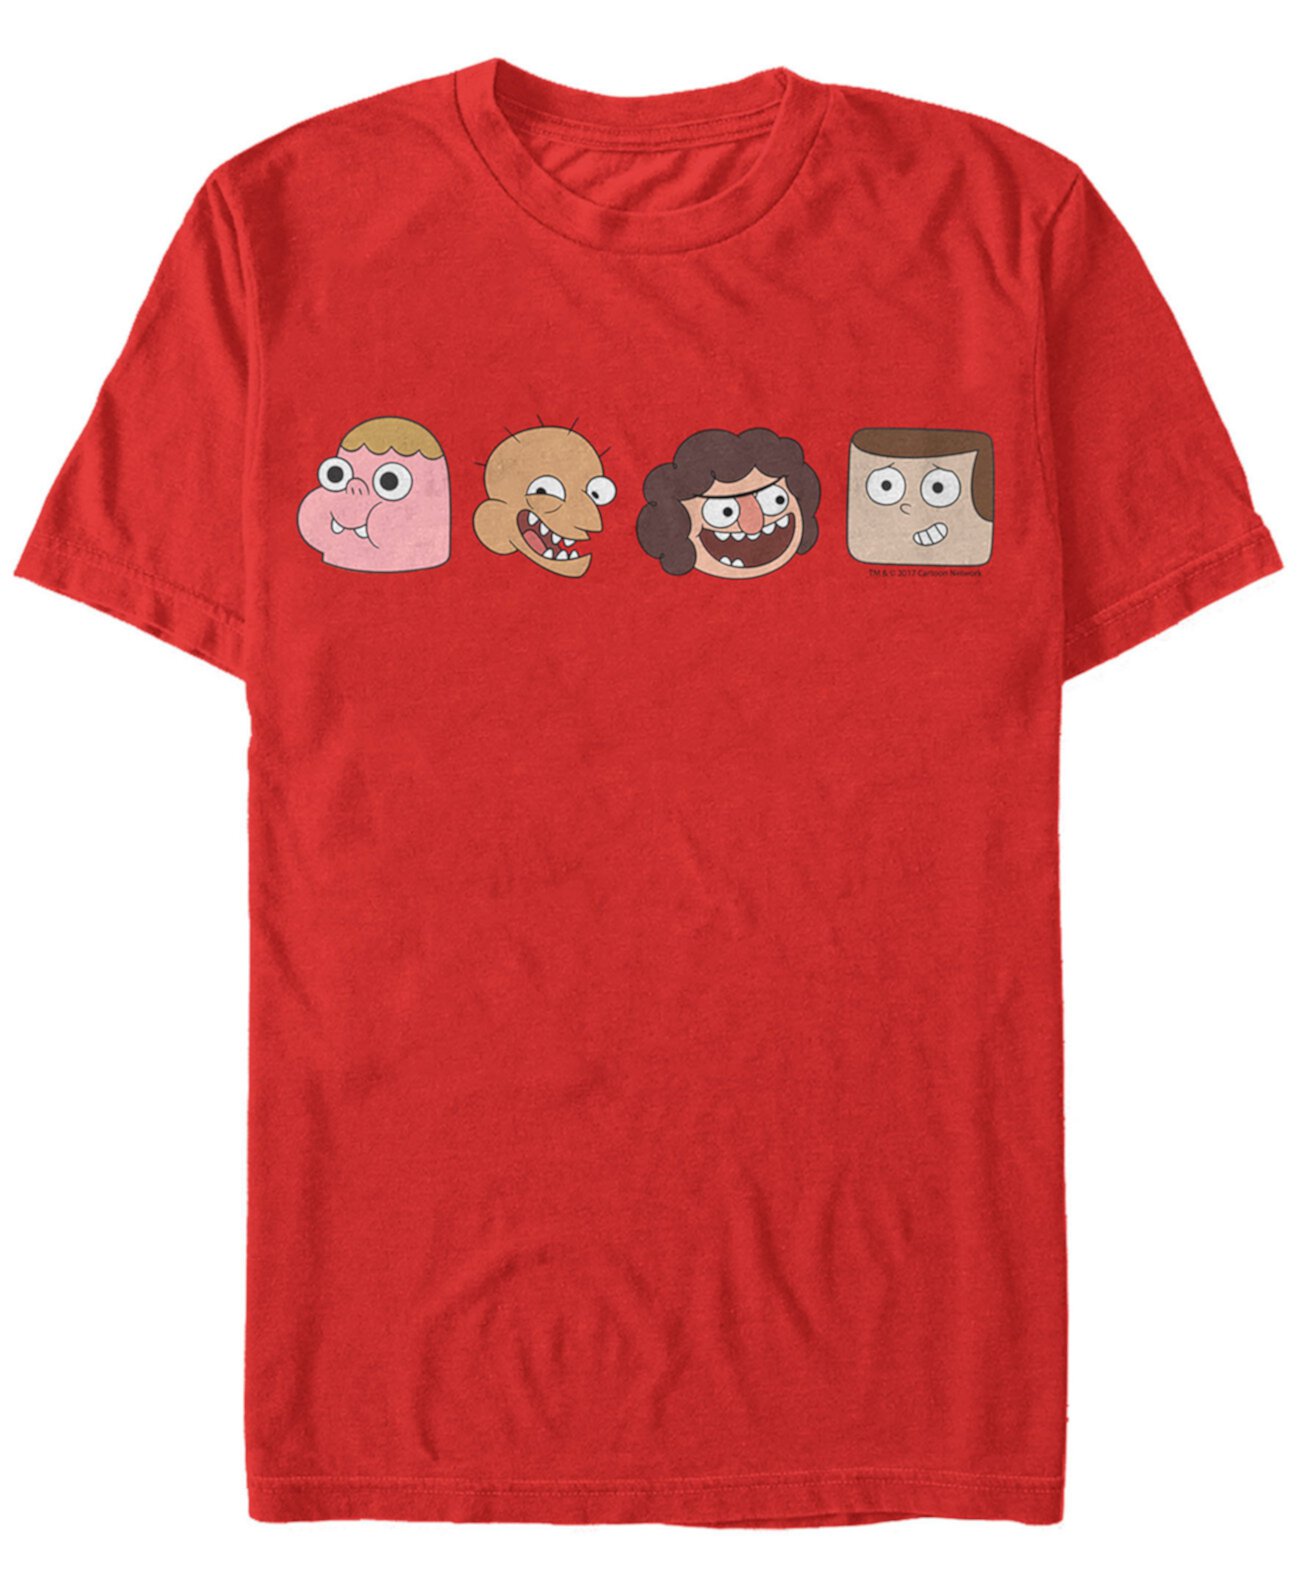 Мужская футболка с короткими рукавами Clarence and Friends Portrait Line-Up FIFTH SUN